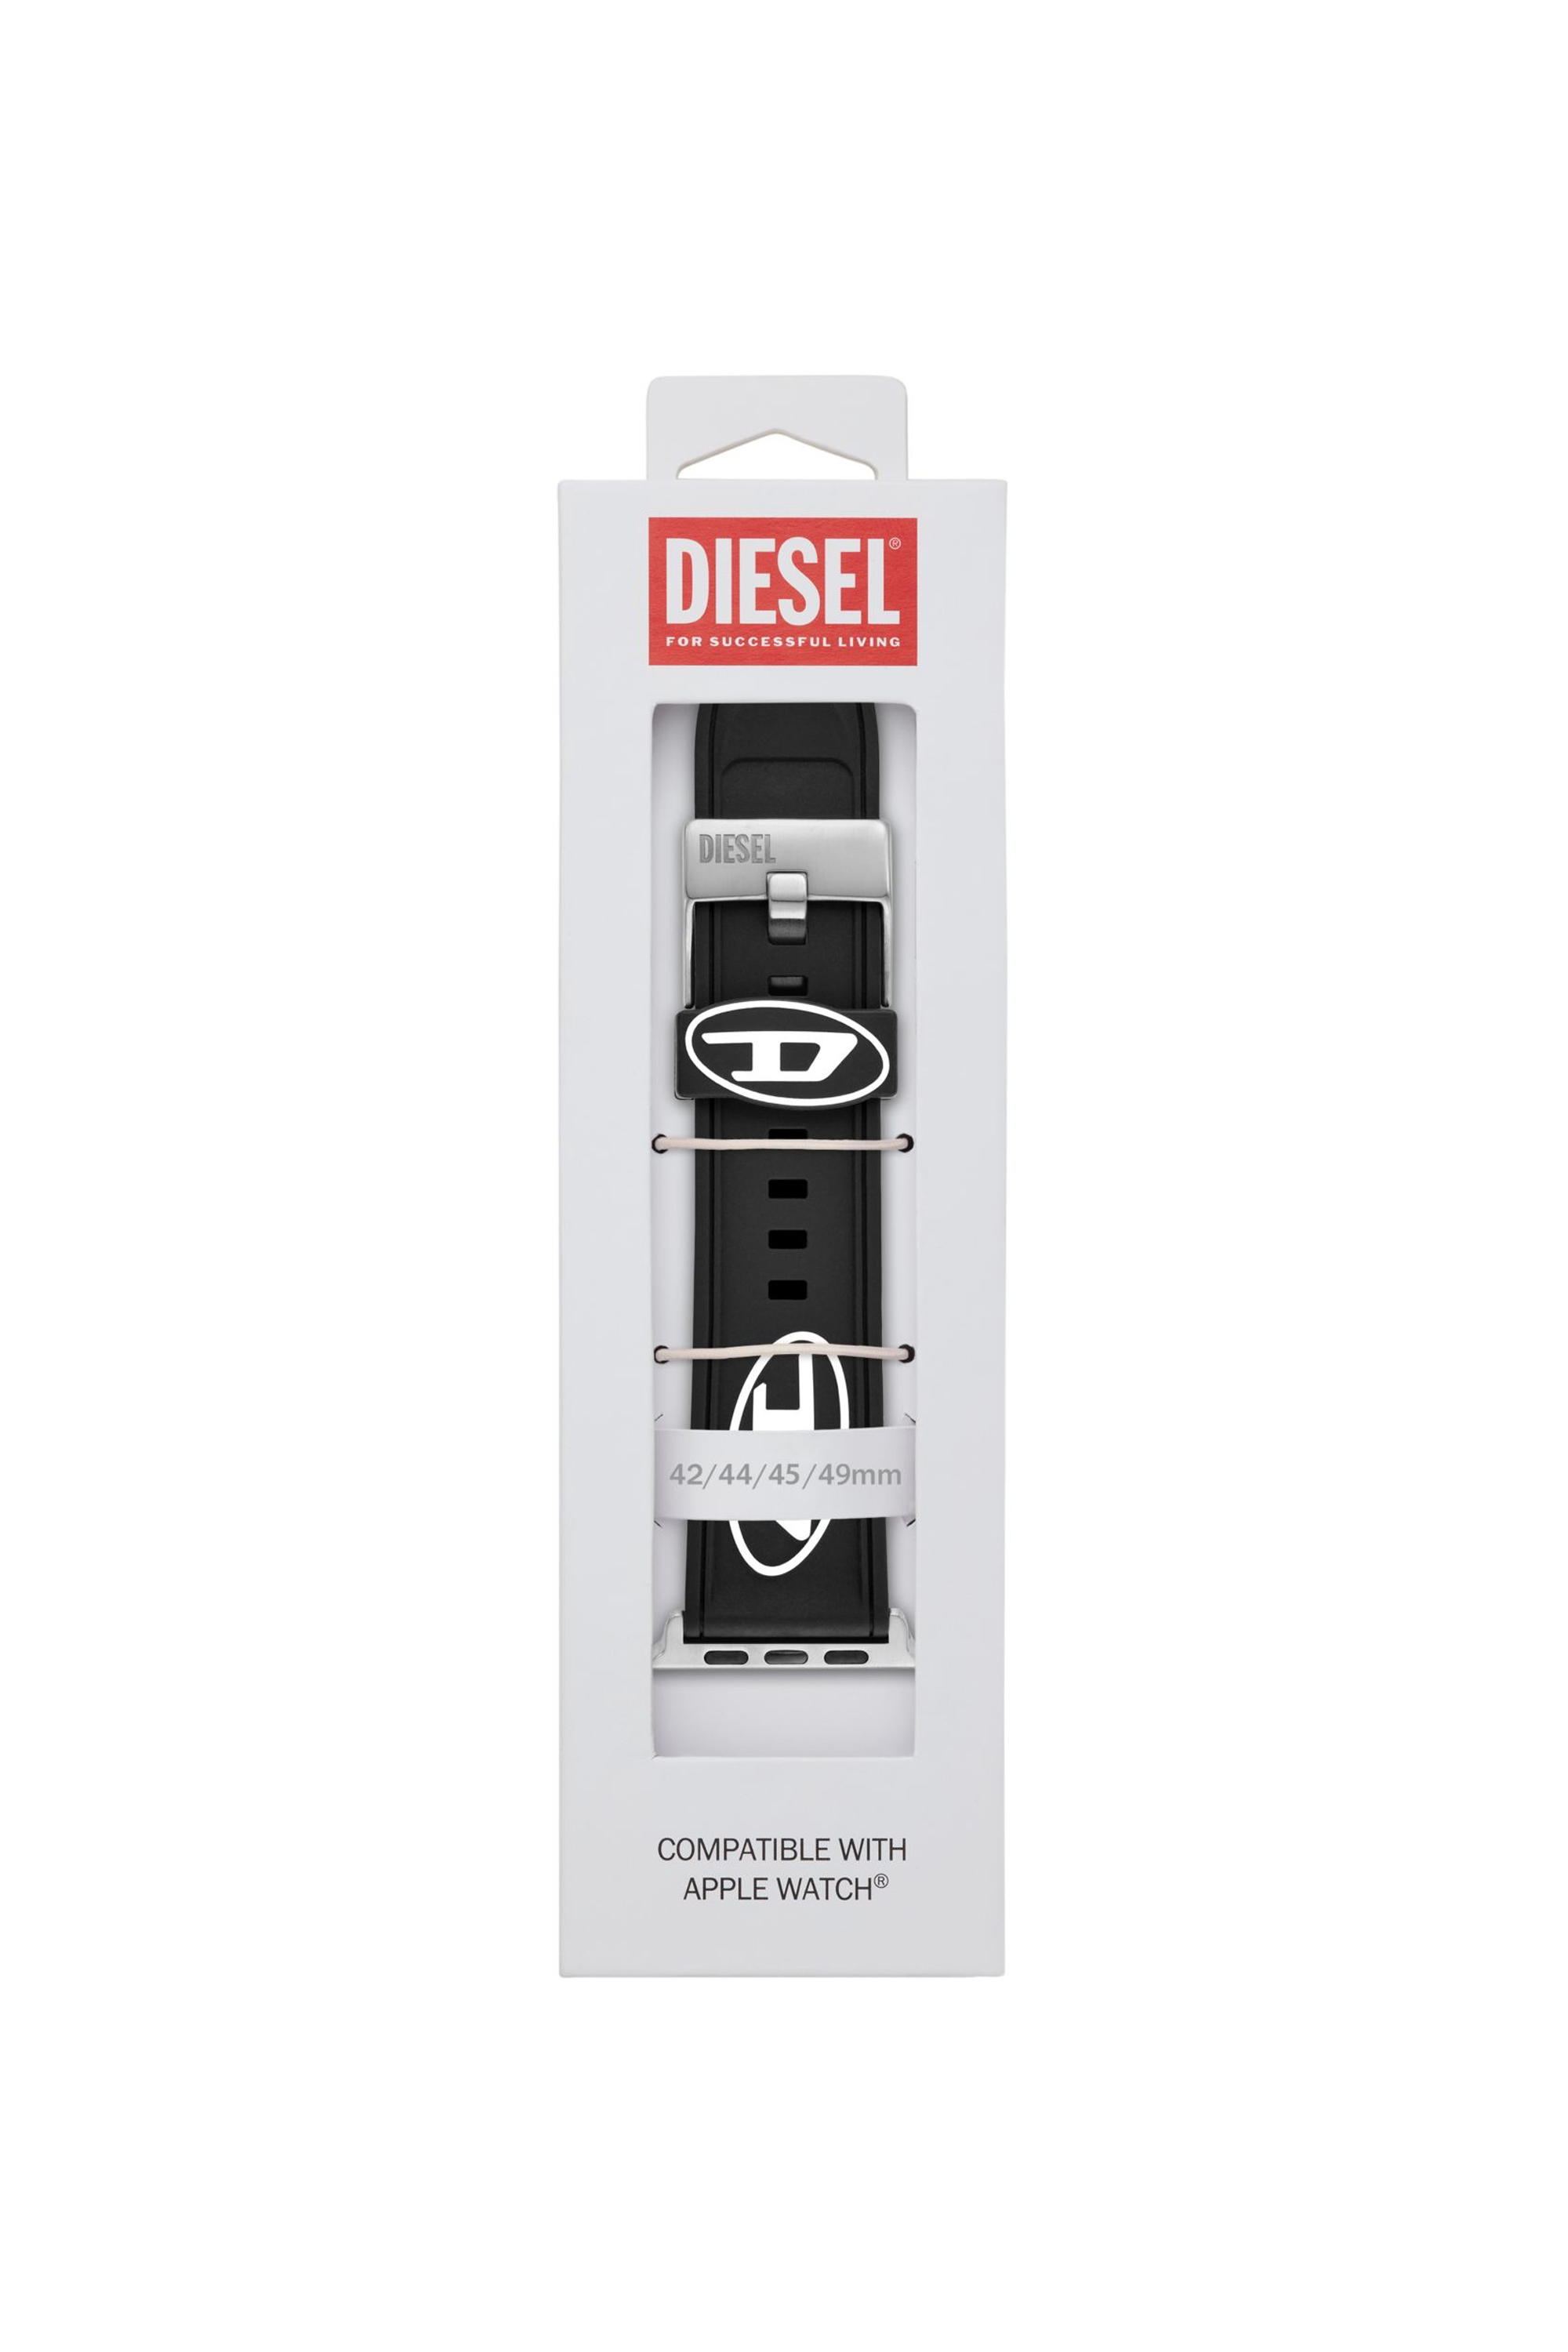 Diesel - DSS0018, Black - Image 3